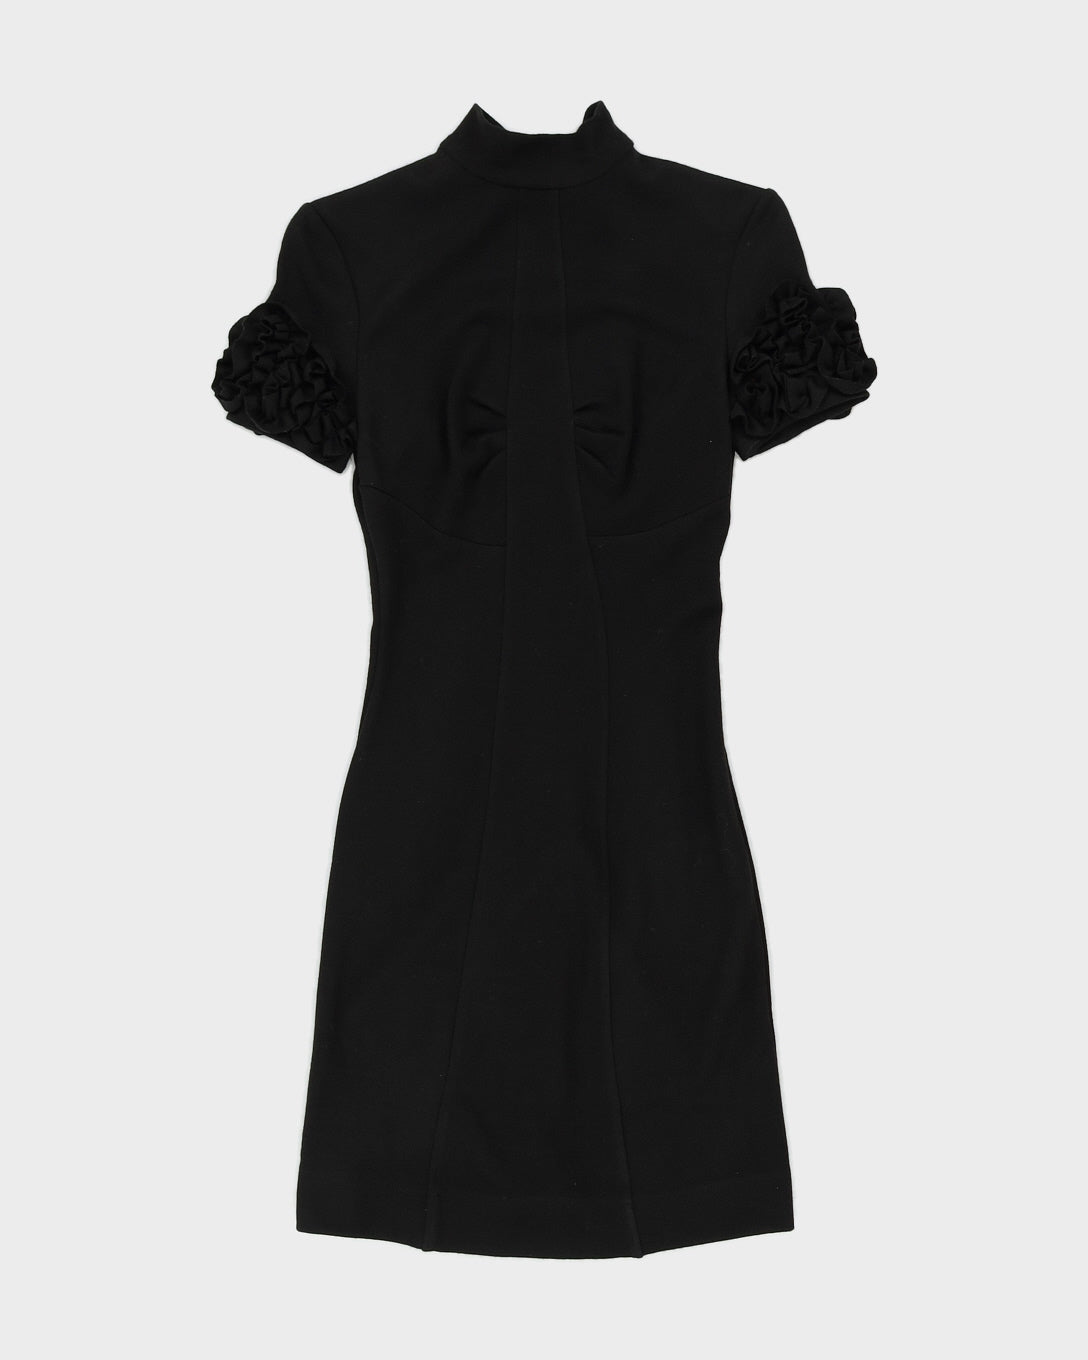 D & G Black Knitted Jersey Dress - XS